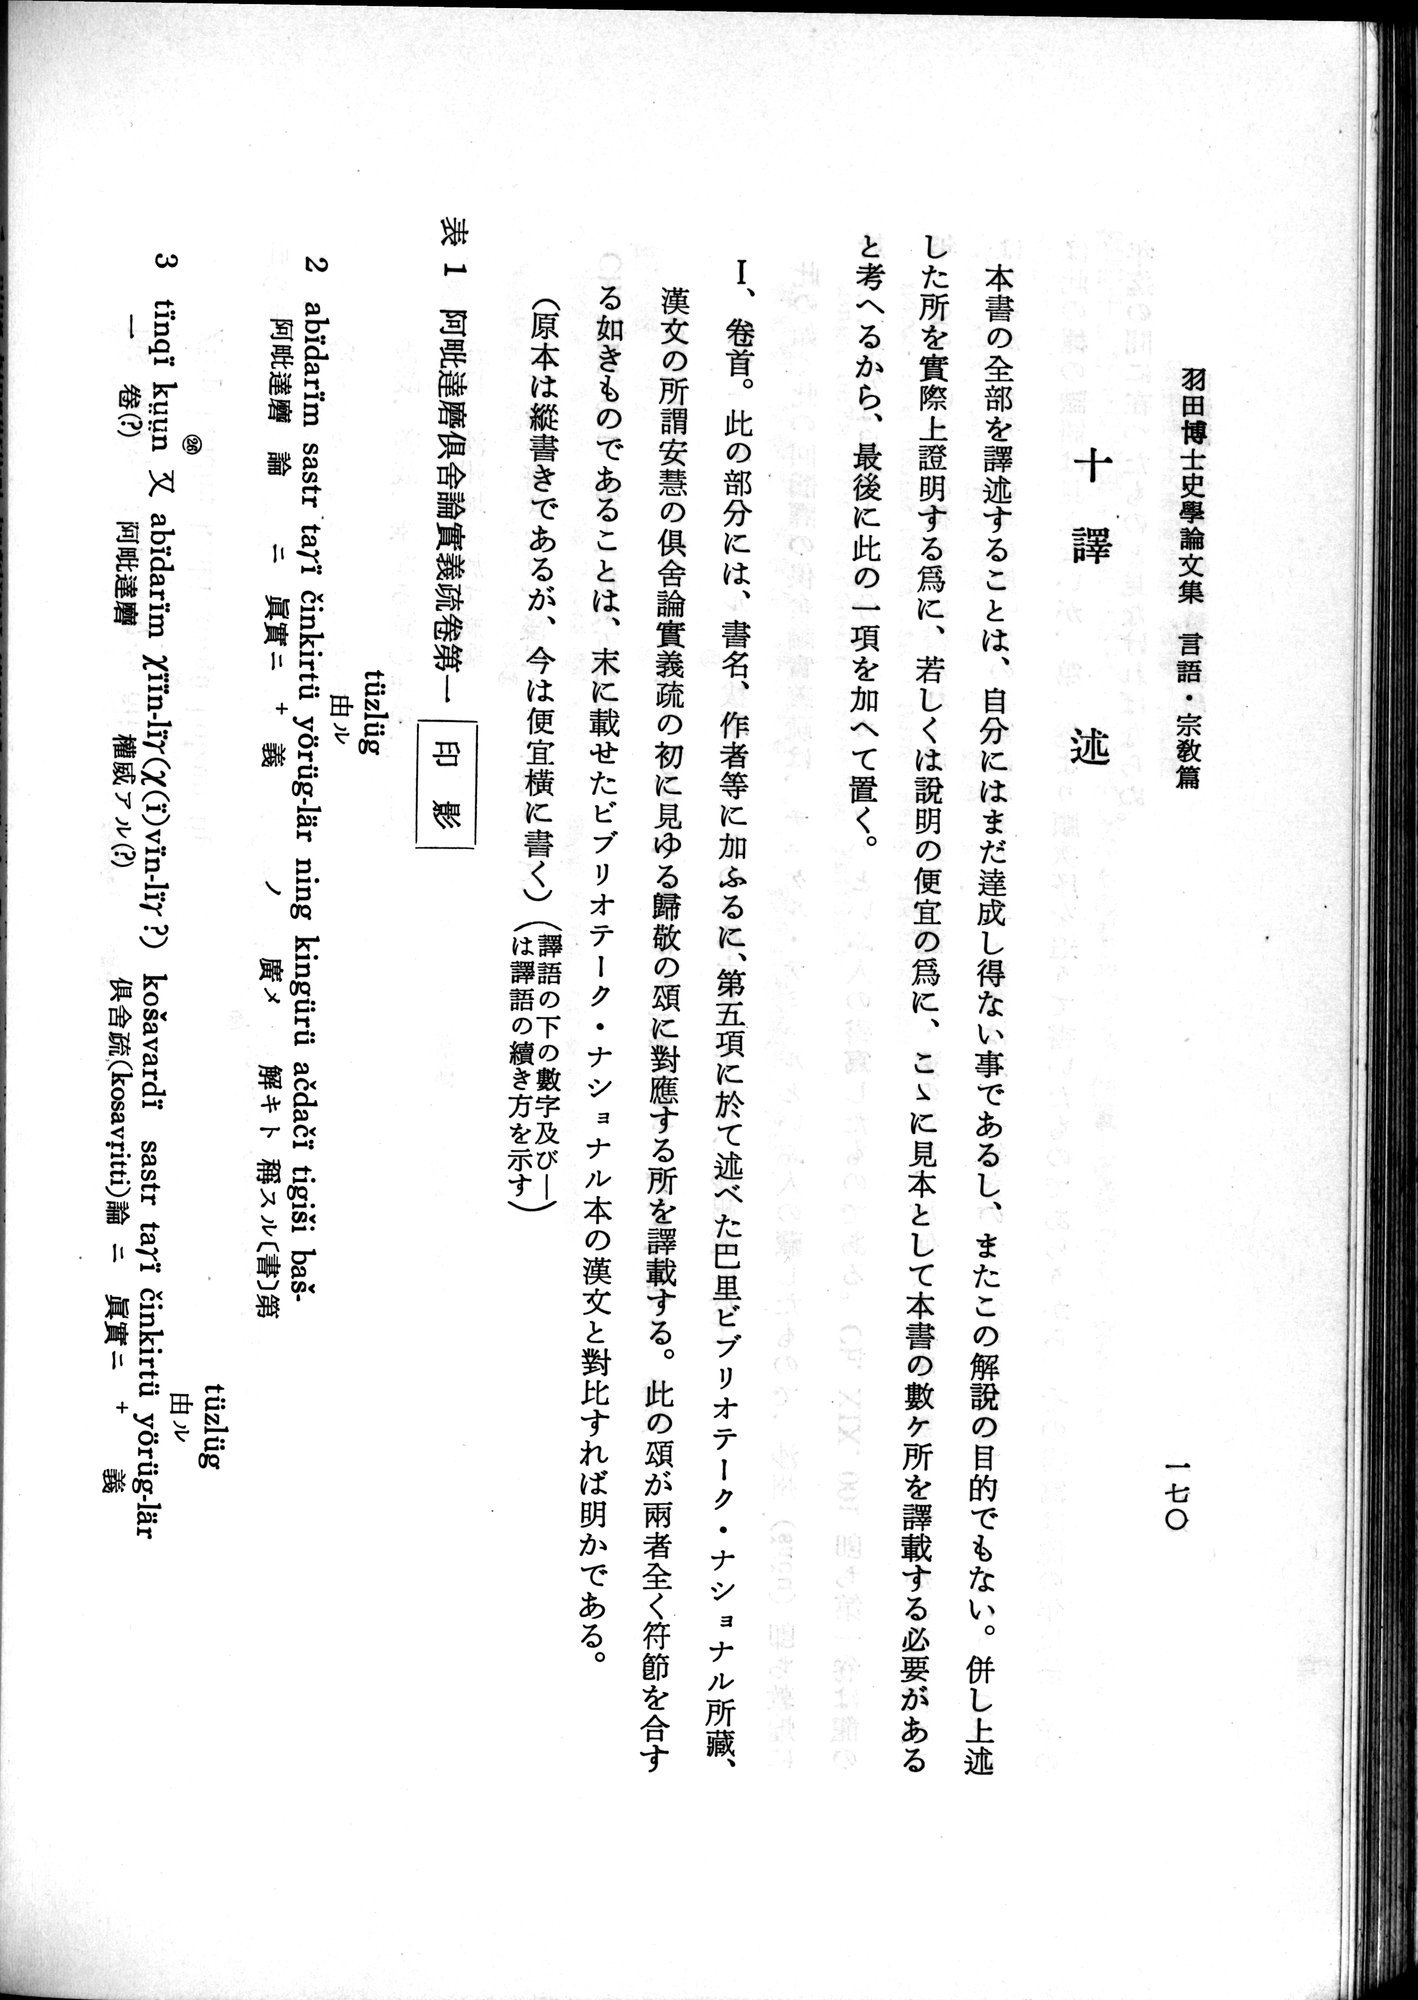 羽田博士史学論文集 : vol.2 / 232 ページ（白黒高解像度画像）